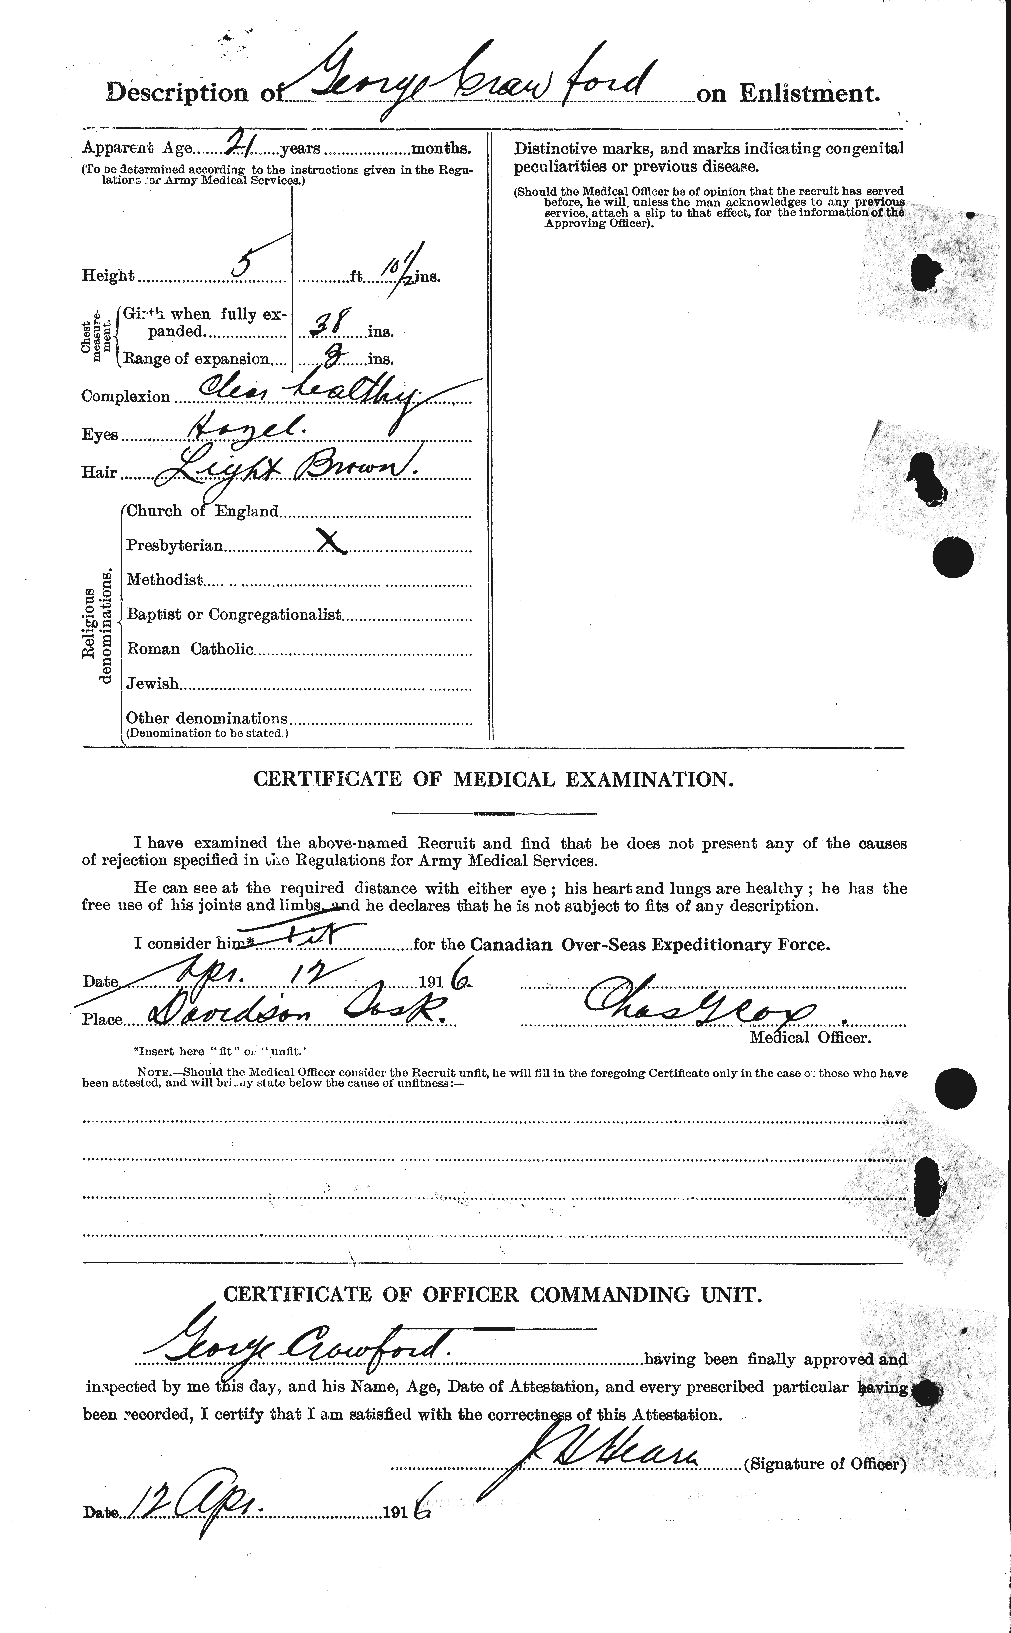 Dossiers du Personnel de la Première Guerre mondiale - CEC 060712b